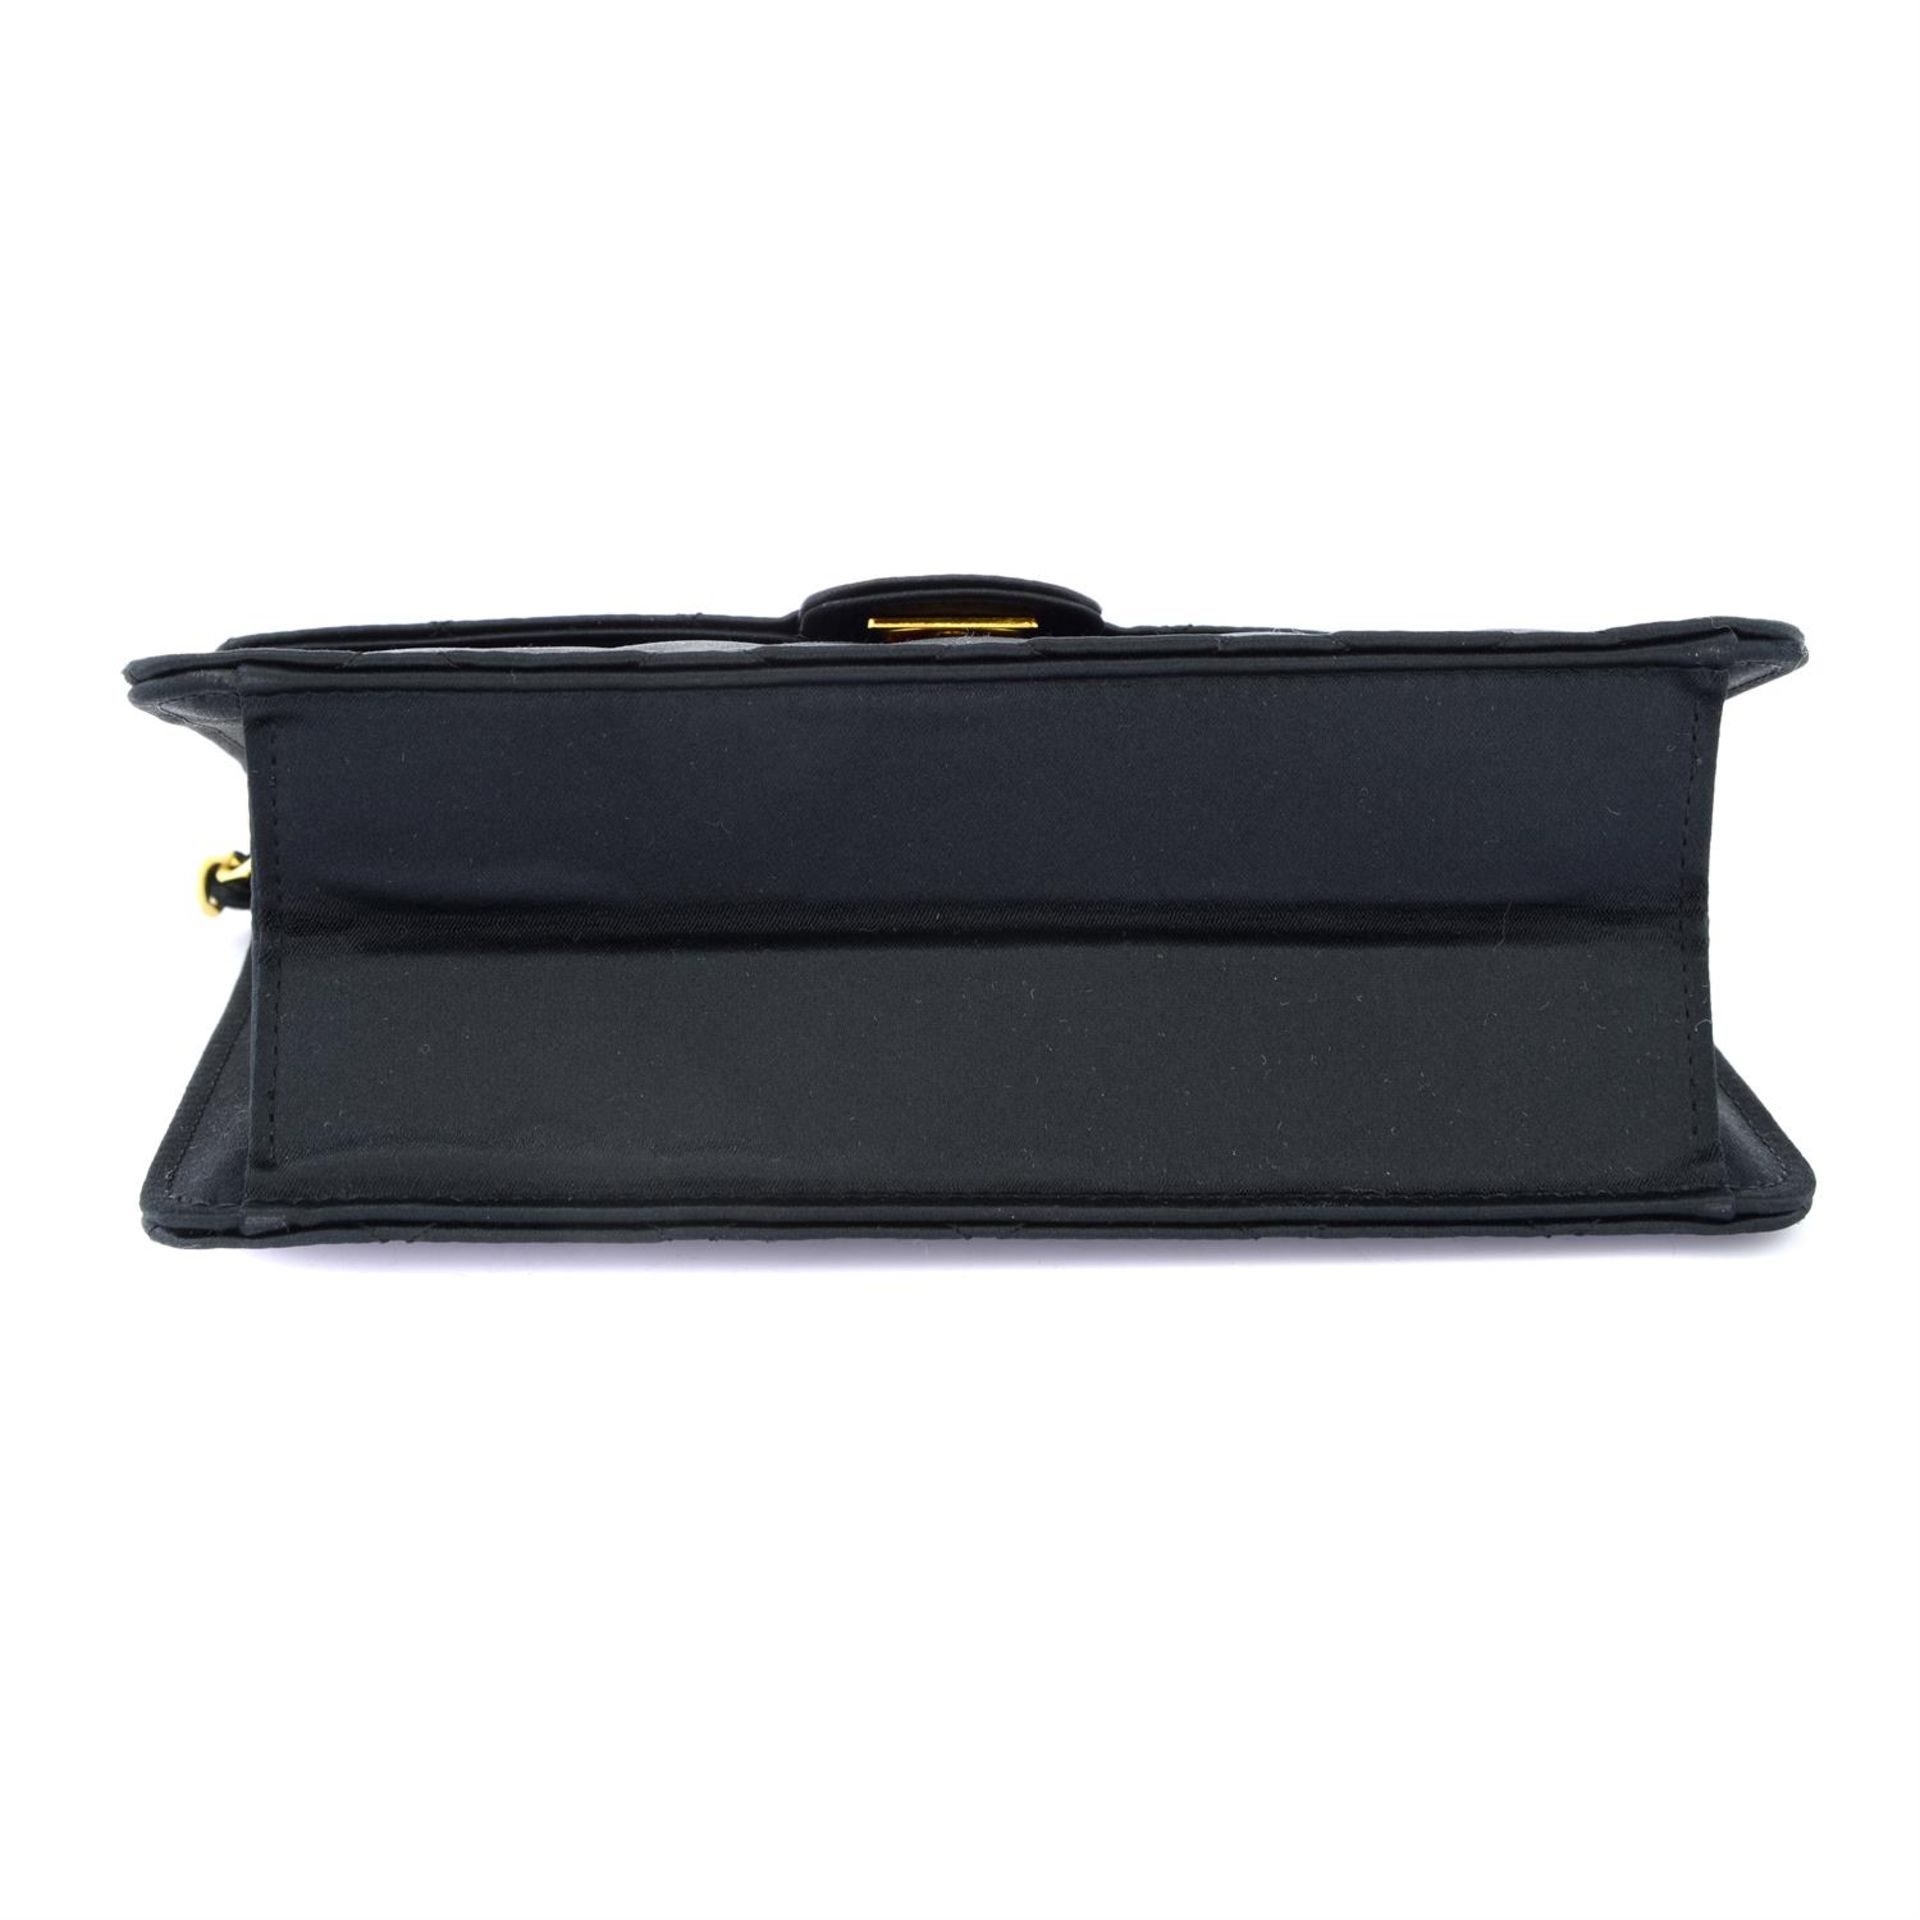 CHANEL - a small black satin handbag. - Image 4 of 4